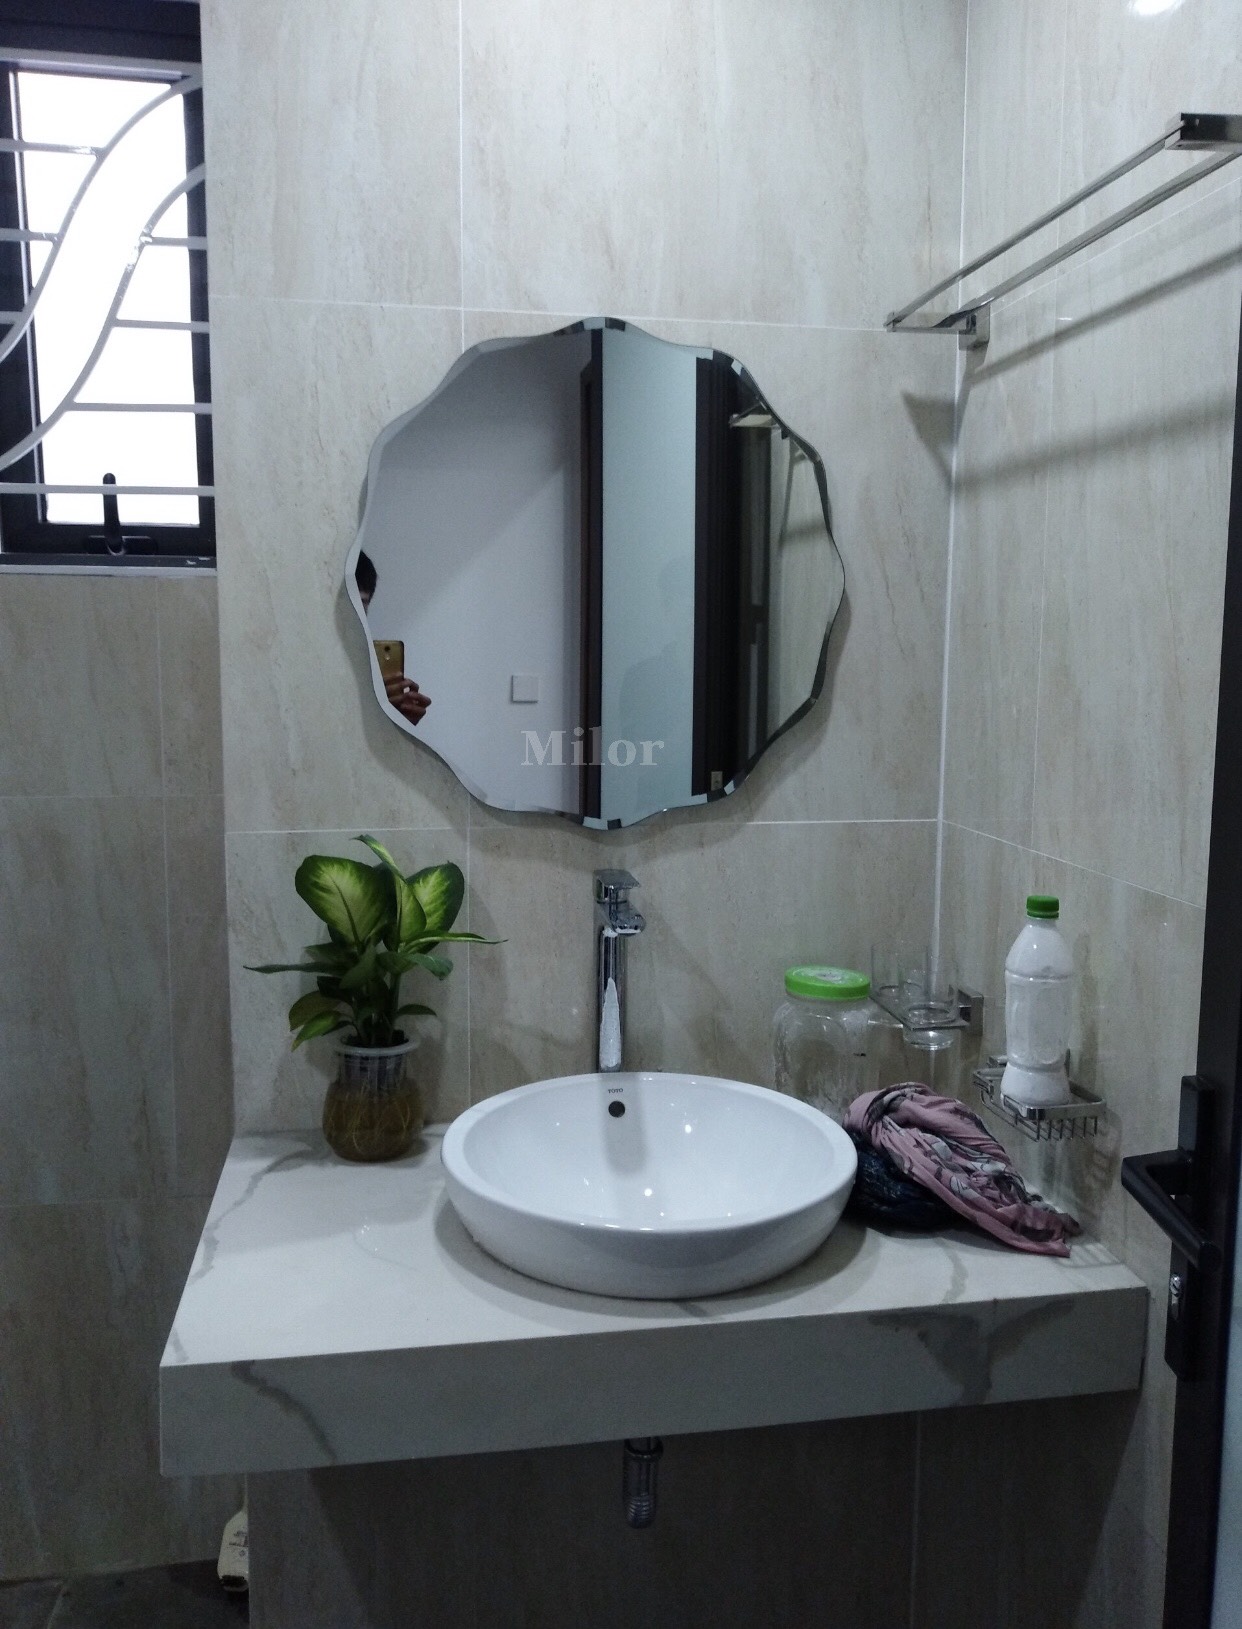 Gương phòng tắm Milor 543C – sản phẩm đến từ thương hiệu nổi tiếng của Ý, mang đến cho bạn trải nghiệm tuyệt vời về chất lượng và thẩm mỹ. Với thiết kế cao cấp, kích thước lớn và đèn led chiếu sáng tinh tế, gương Milor 543C chắc chắn sẽ làm hài lòng những khách hàng khó tính nhất. Xem ngay ảnh liên quan để khám phá nét đặc sắc của gương này.